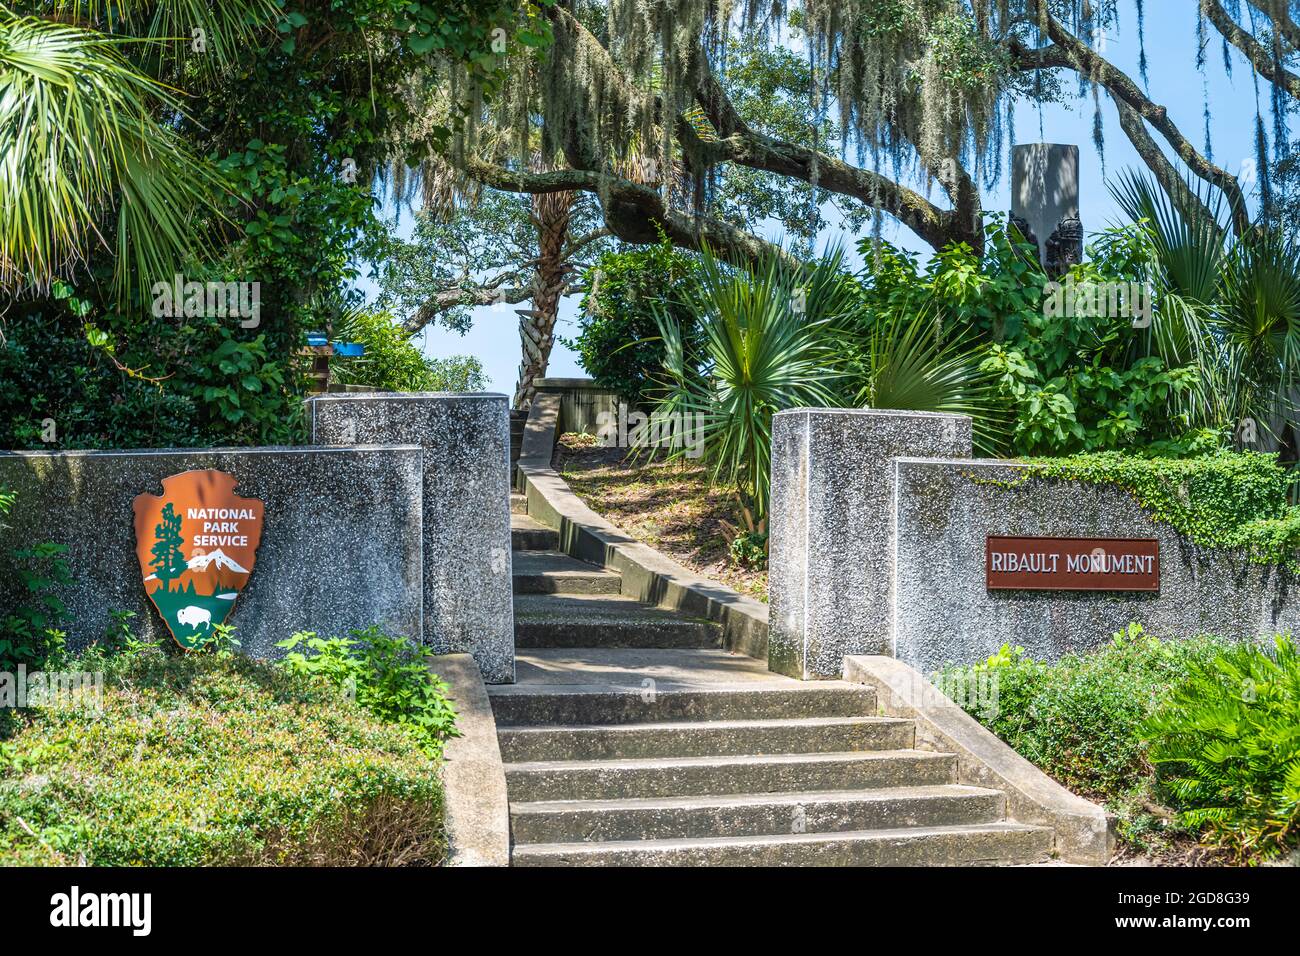 Il Monumento Ribault (colonna Ribault) commemora l'atterraggio del 1562 di Jean Ribault vicino alla foce del fiume St. Johns nell'attuale Jacksonville, Florida. Foto Stock